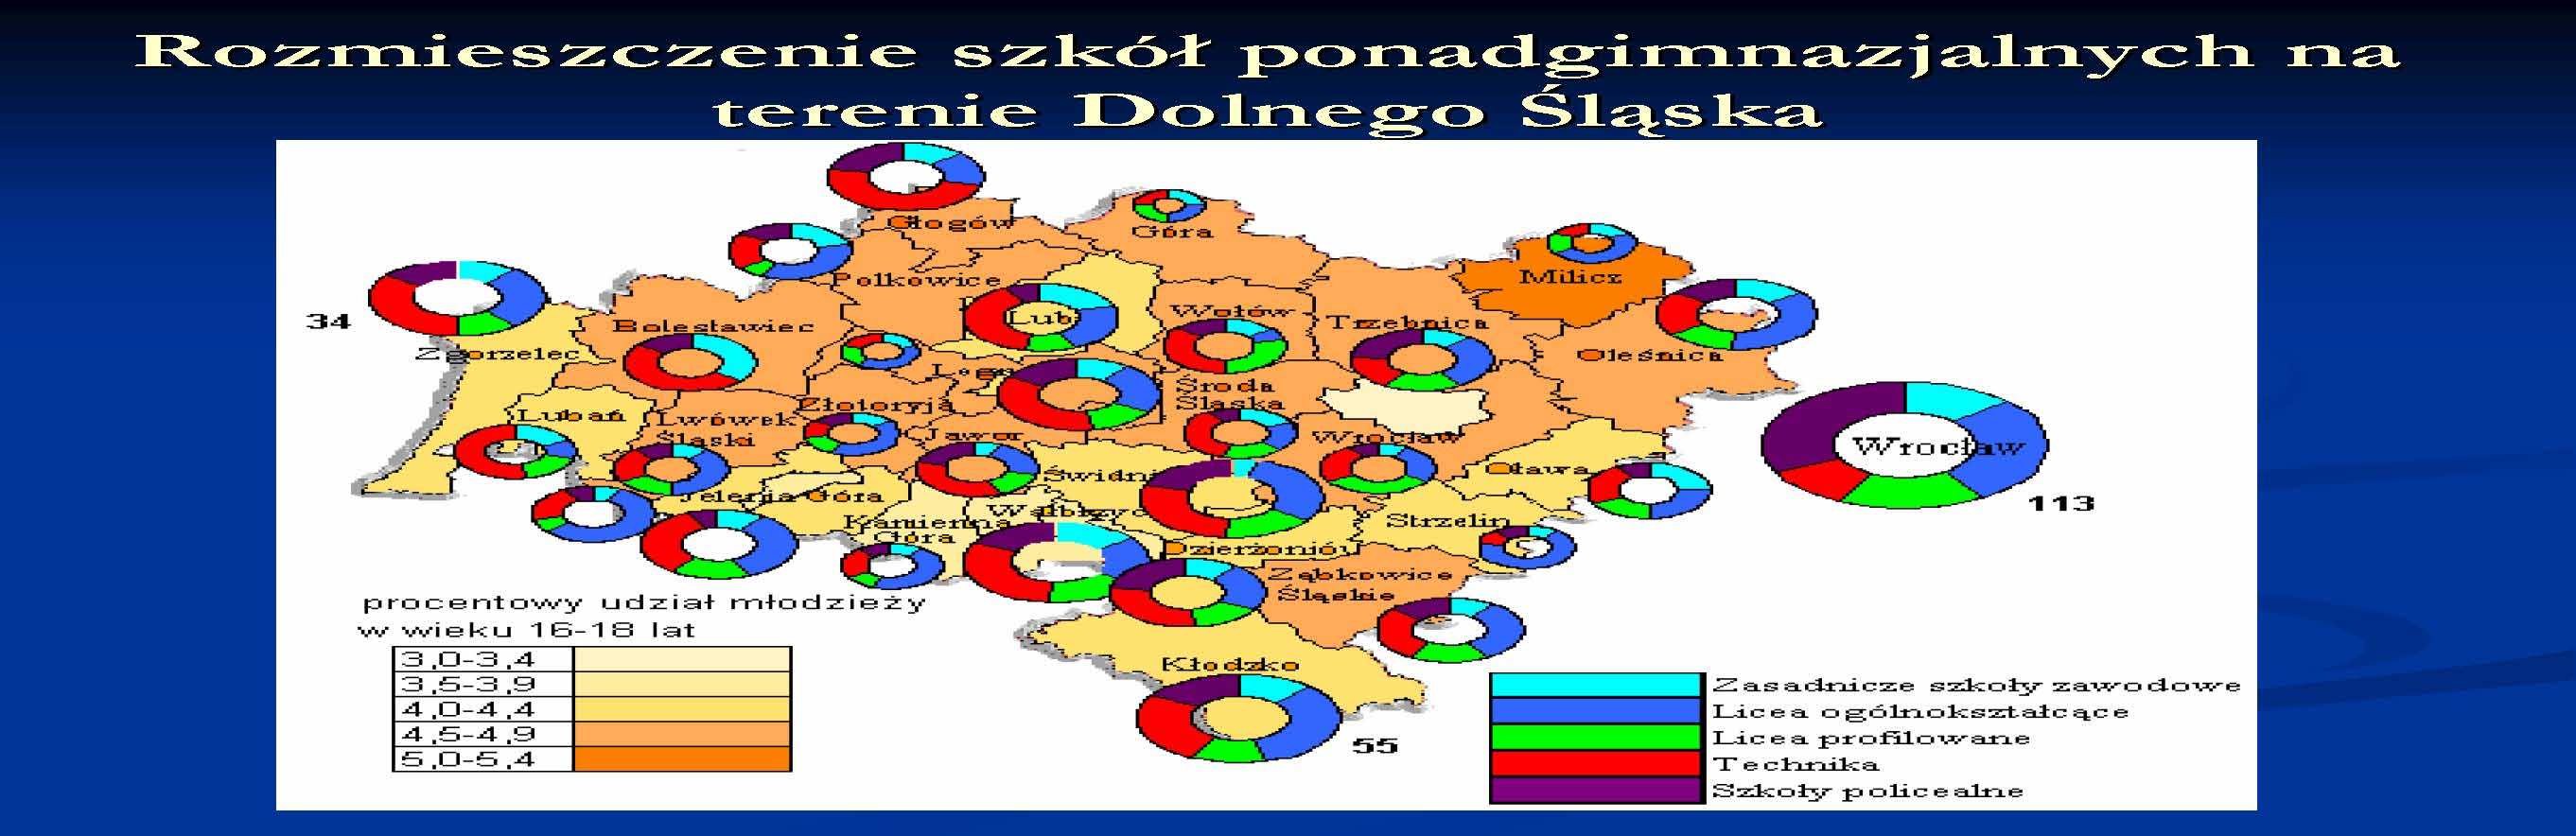 Rozmieszczenie szkół ponadgimnazjalnych na terenie Dolnego Śląska 2008 Źródło:http://www.wiedzaplus2.ae.wroc.